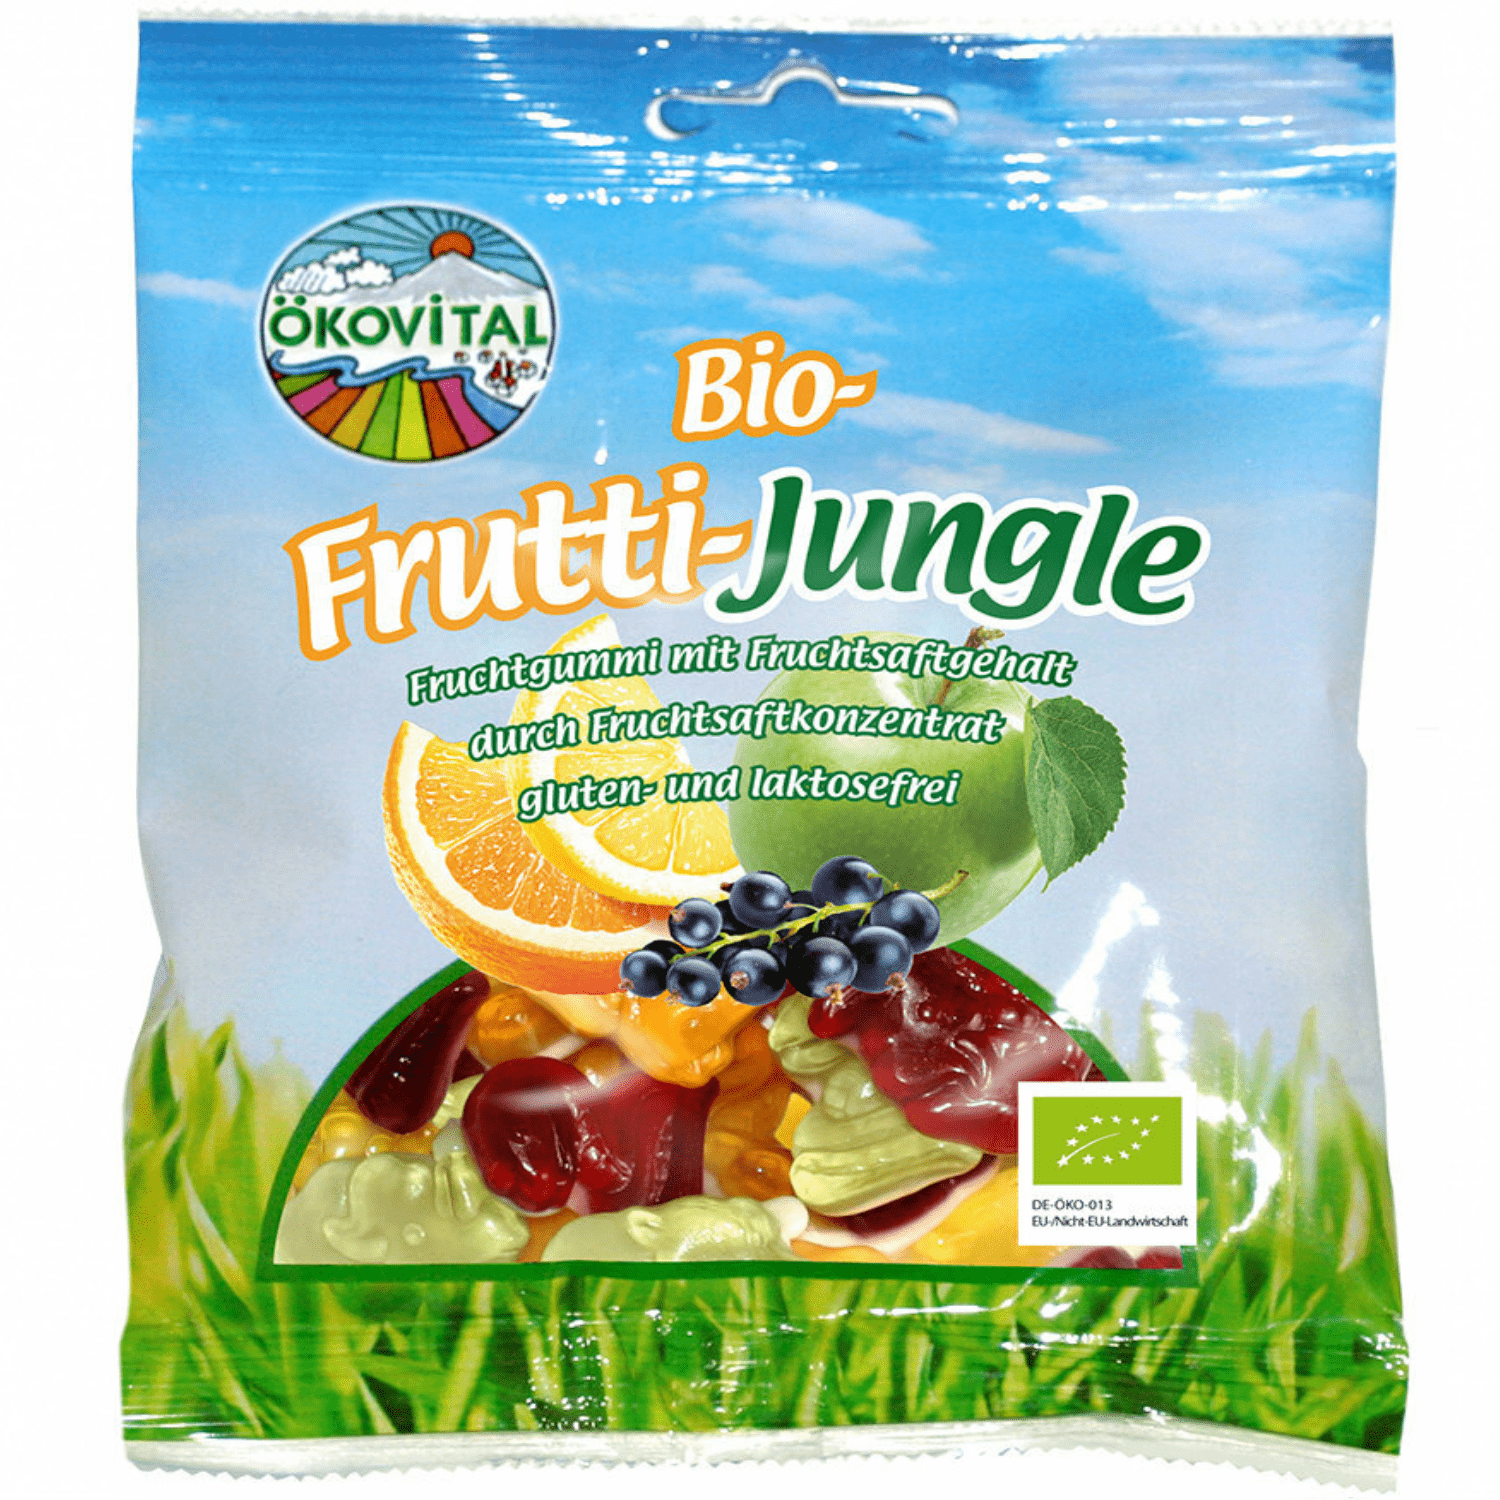 ÖKOVITAL želé - ovocná džungla vegan (100g)